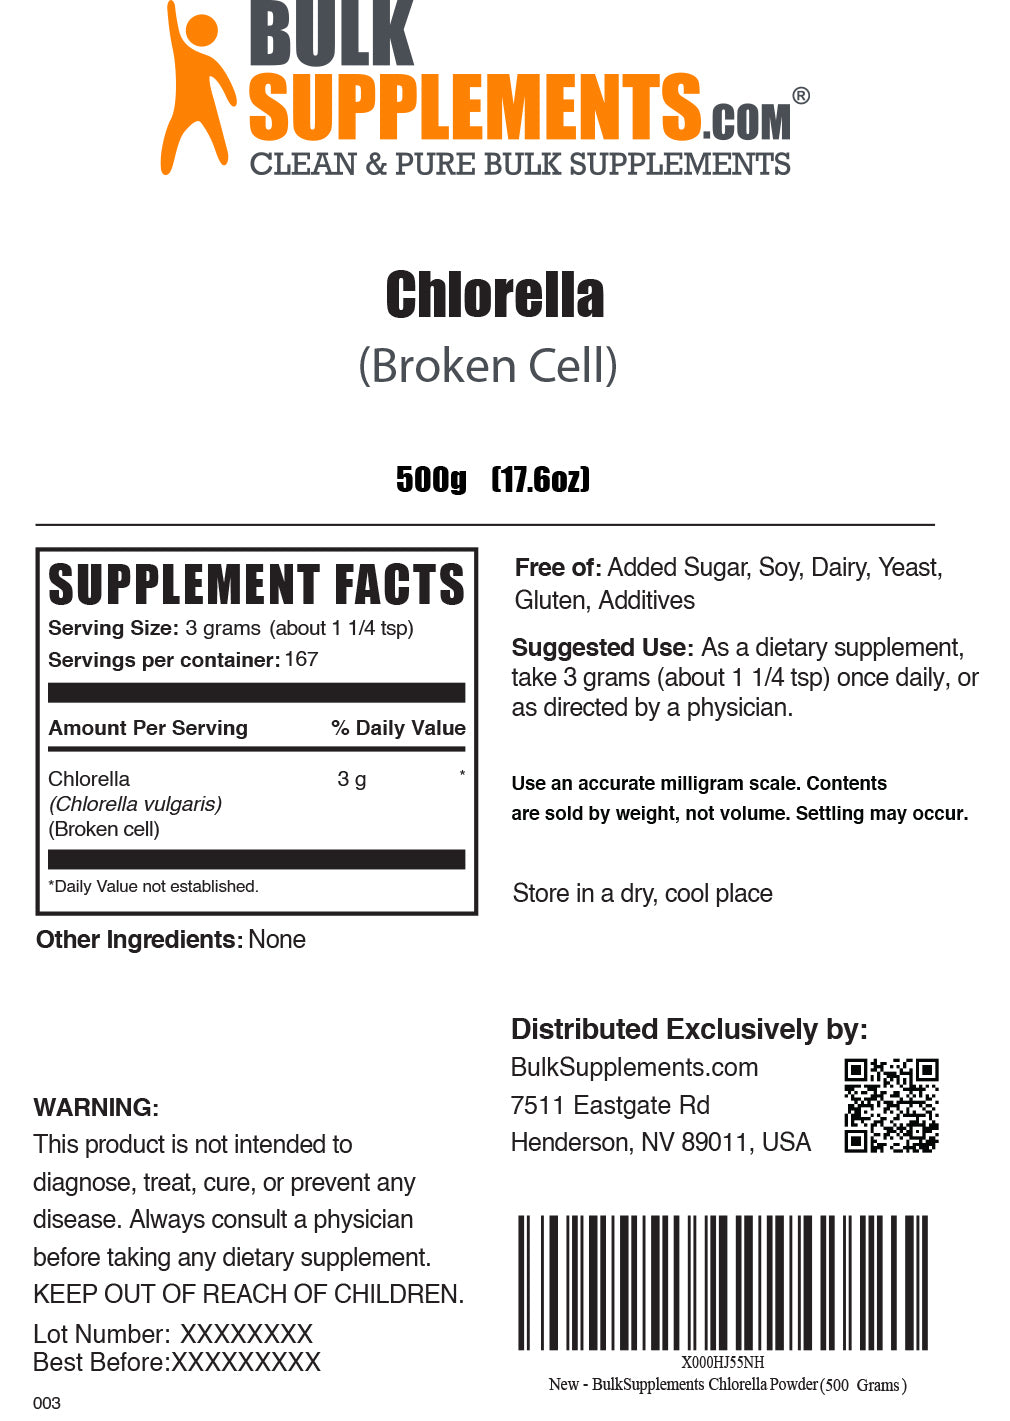 500g of chlorella powder